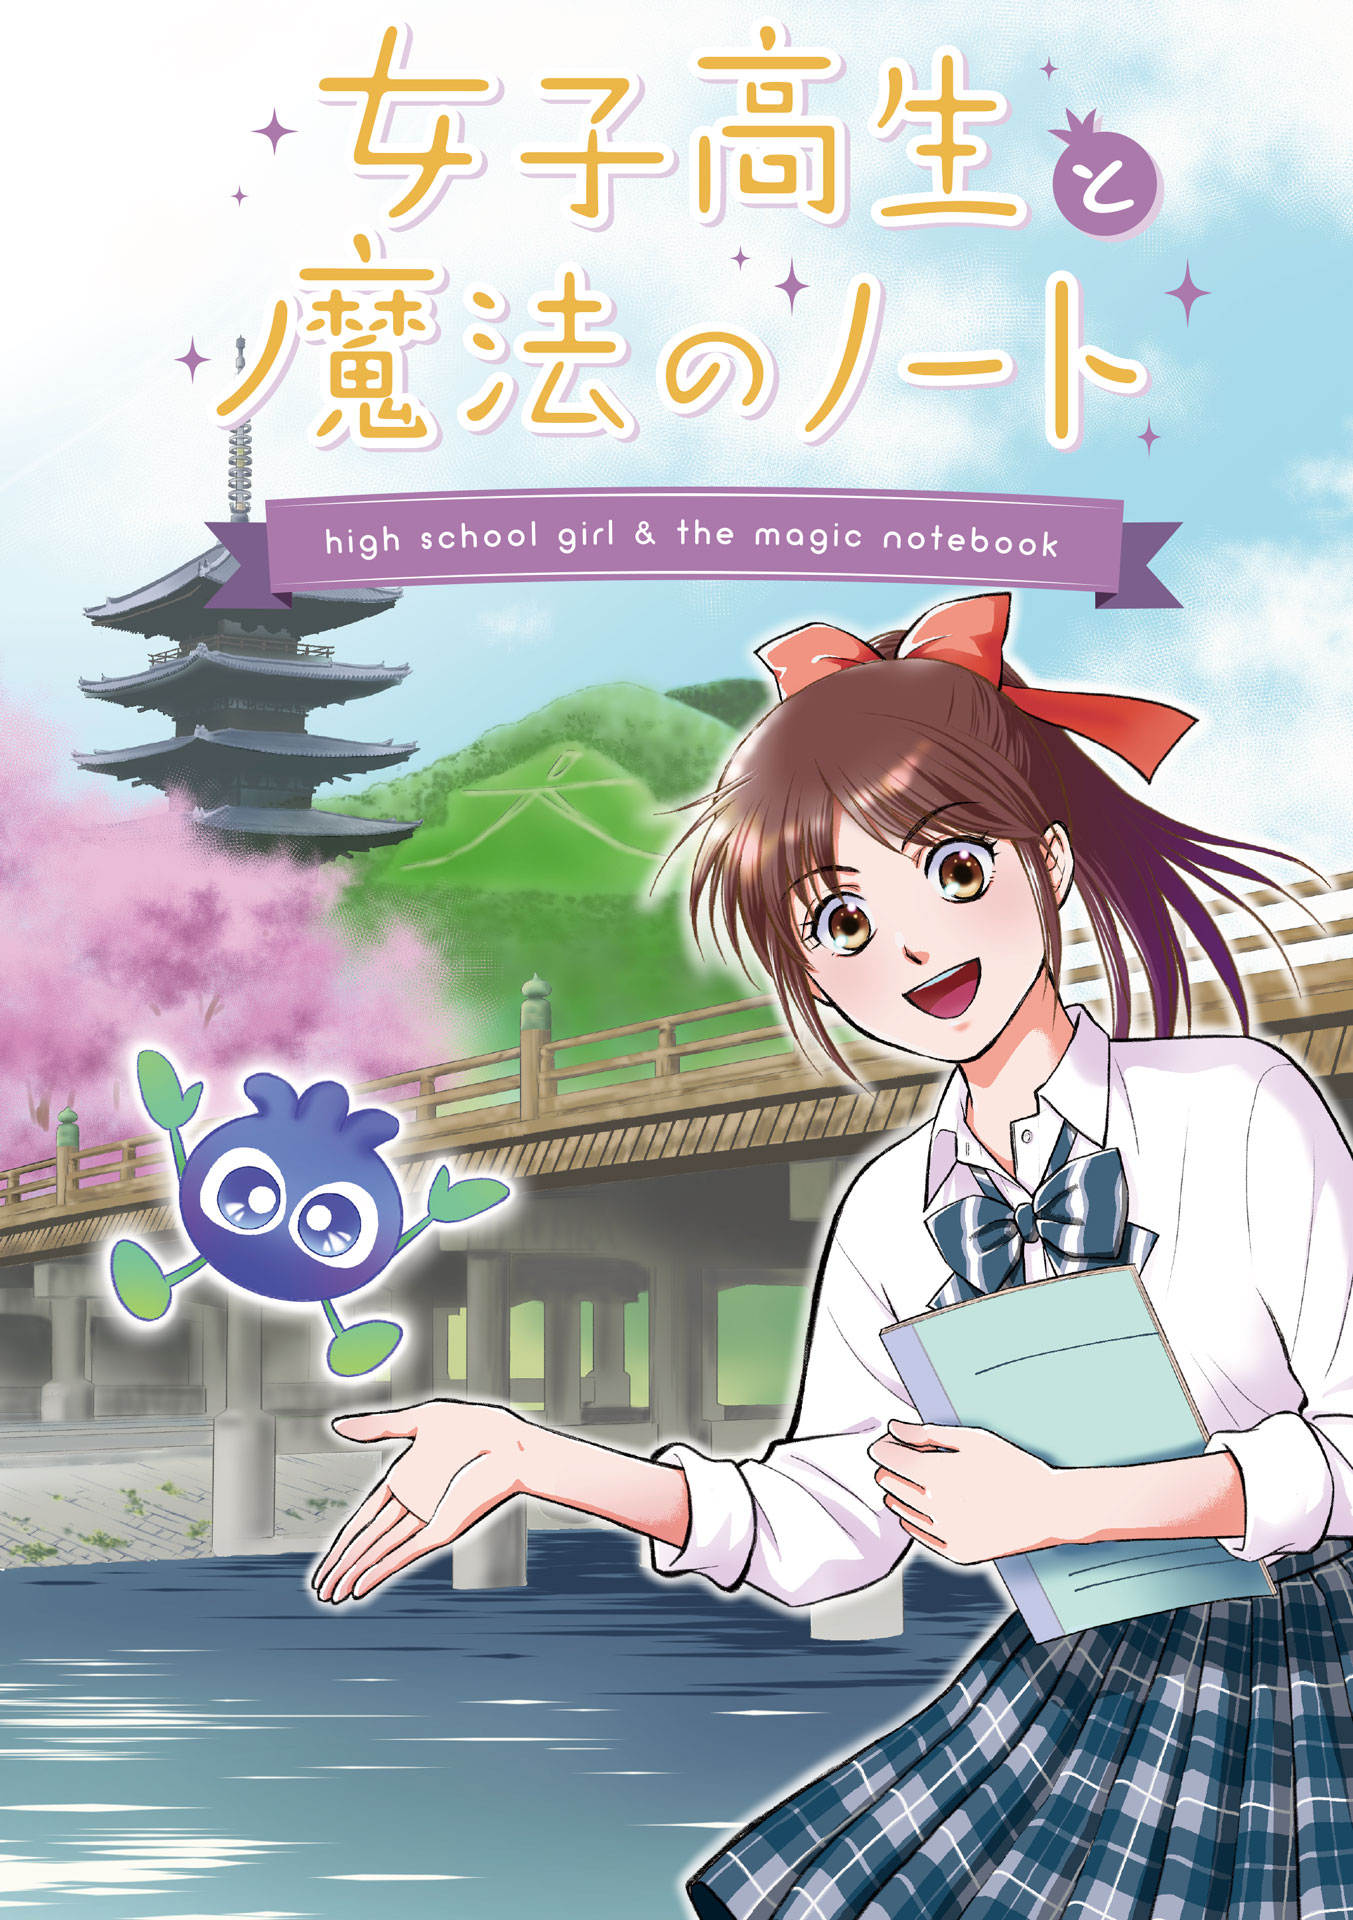 NEWVERY、京都市と連携しマンガ・アニメを同時制作のサブ画像1_「女子高生と魔法のノート」表紙